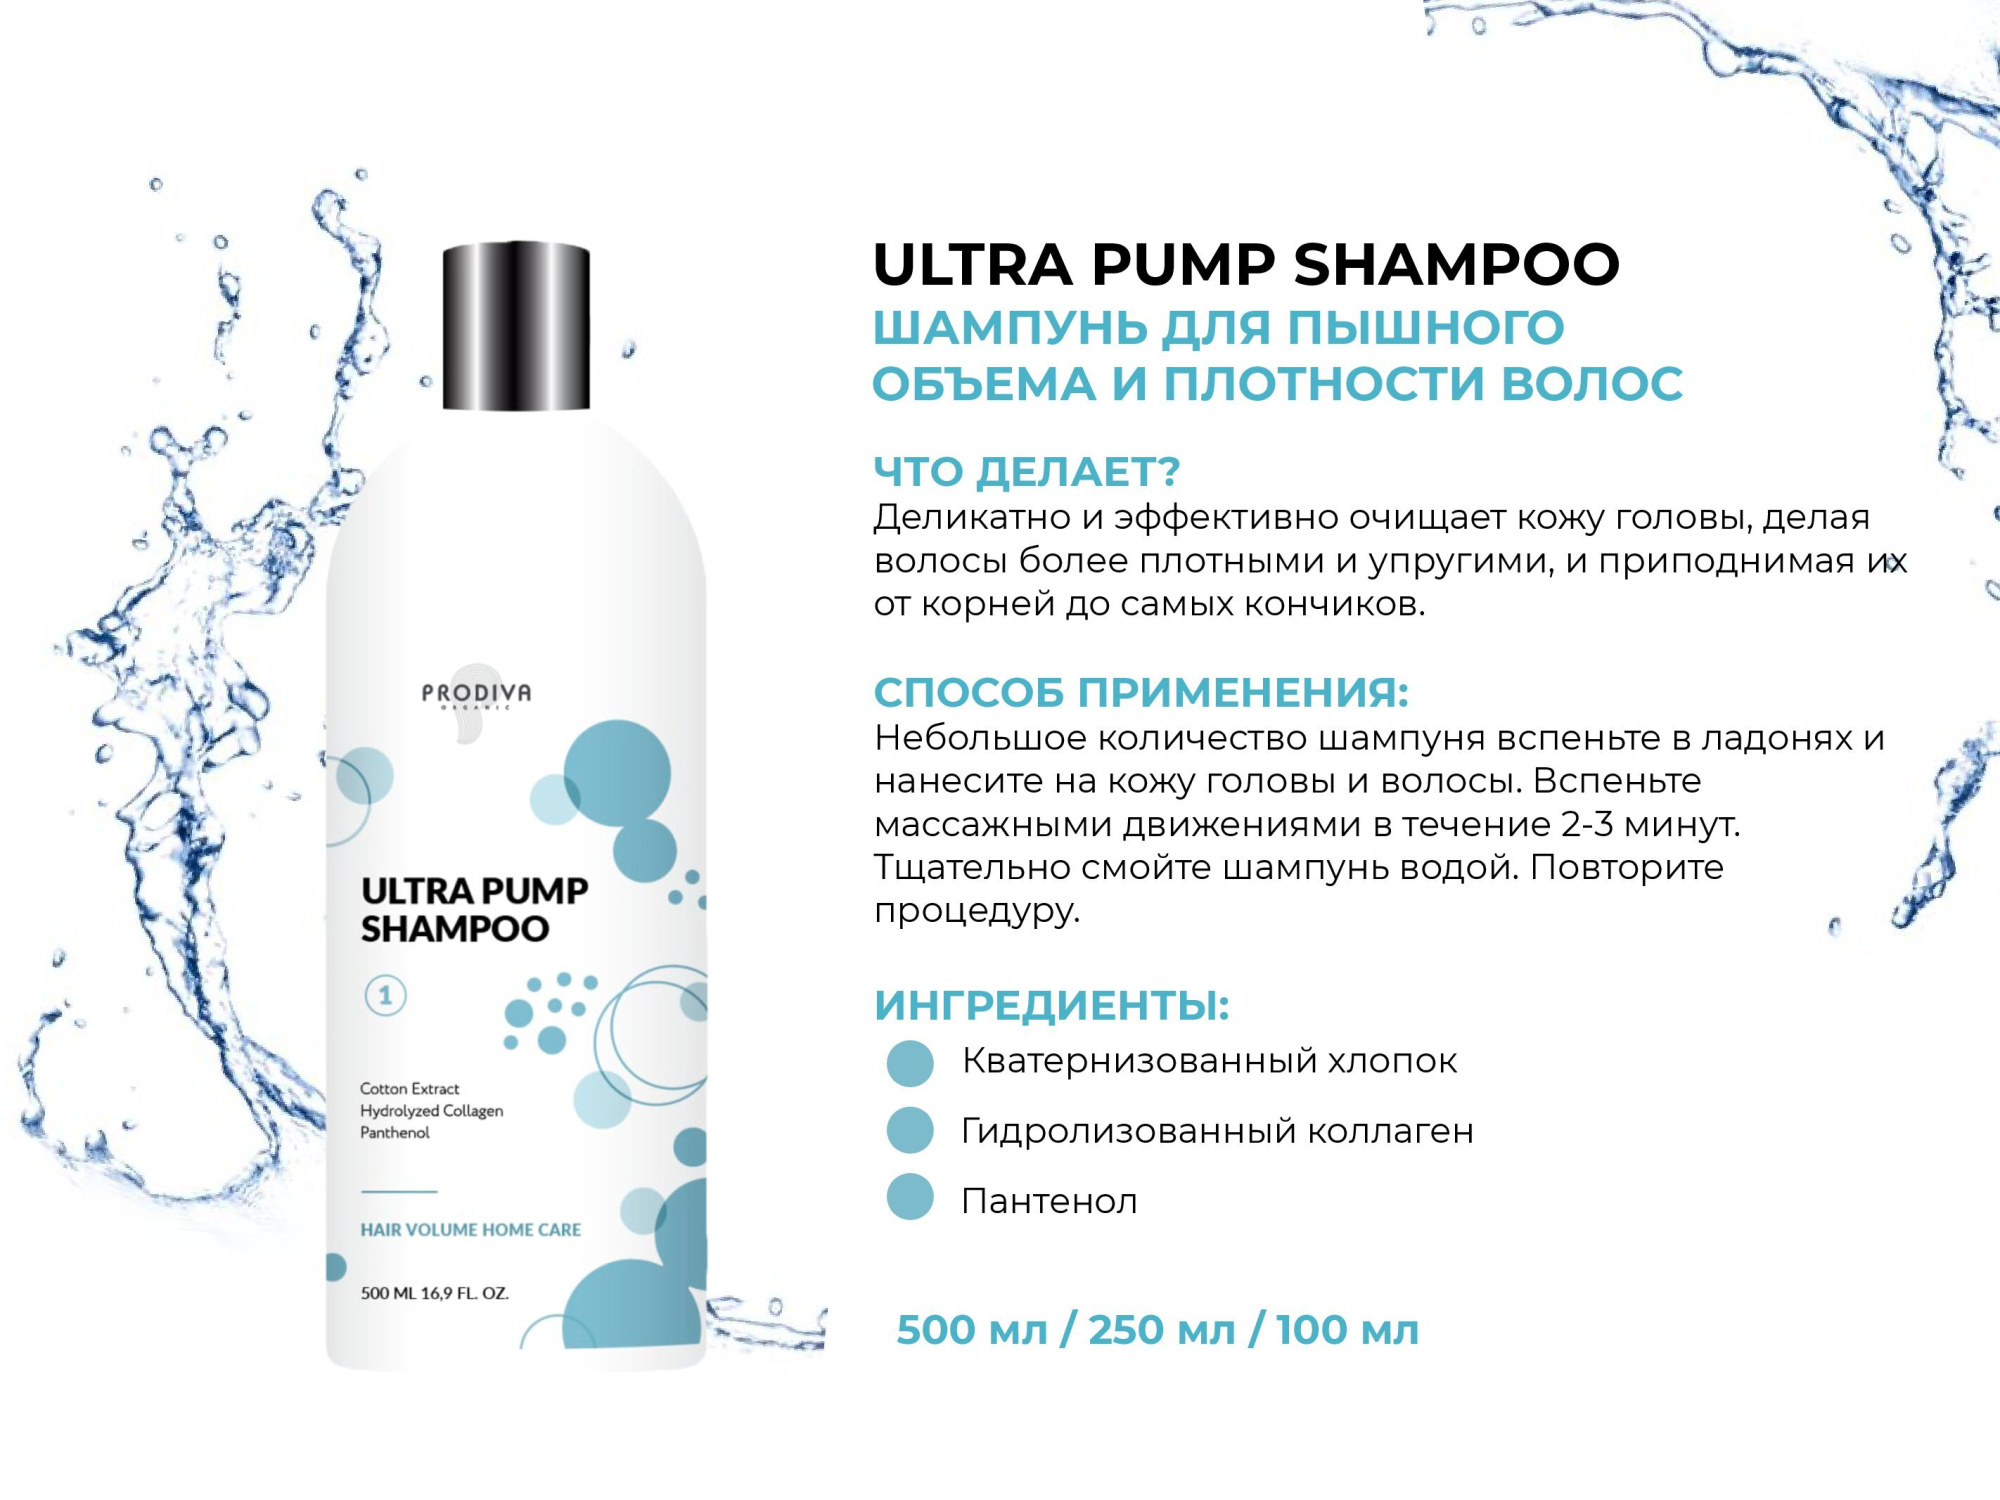 Шампунь для пышного объема и плотности волос PRODIVA Ultra Pump Shampoo, 100 мл